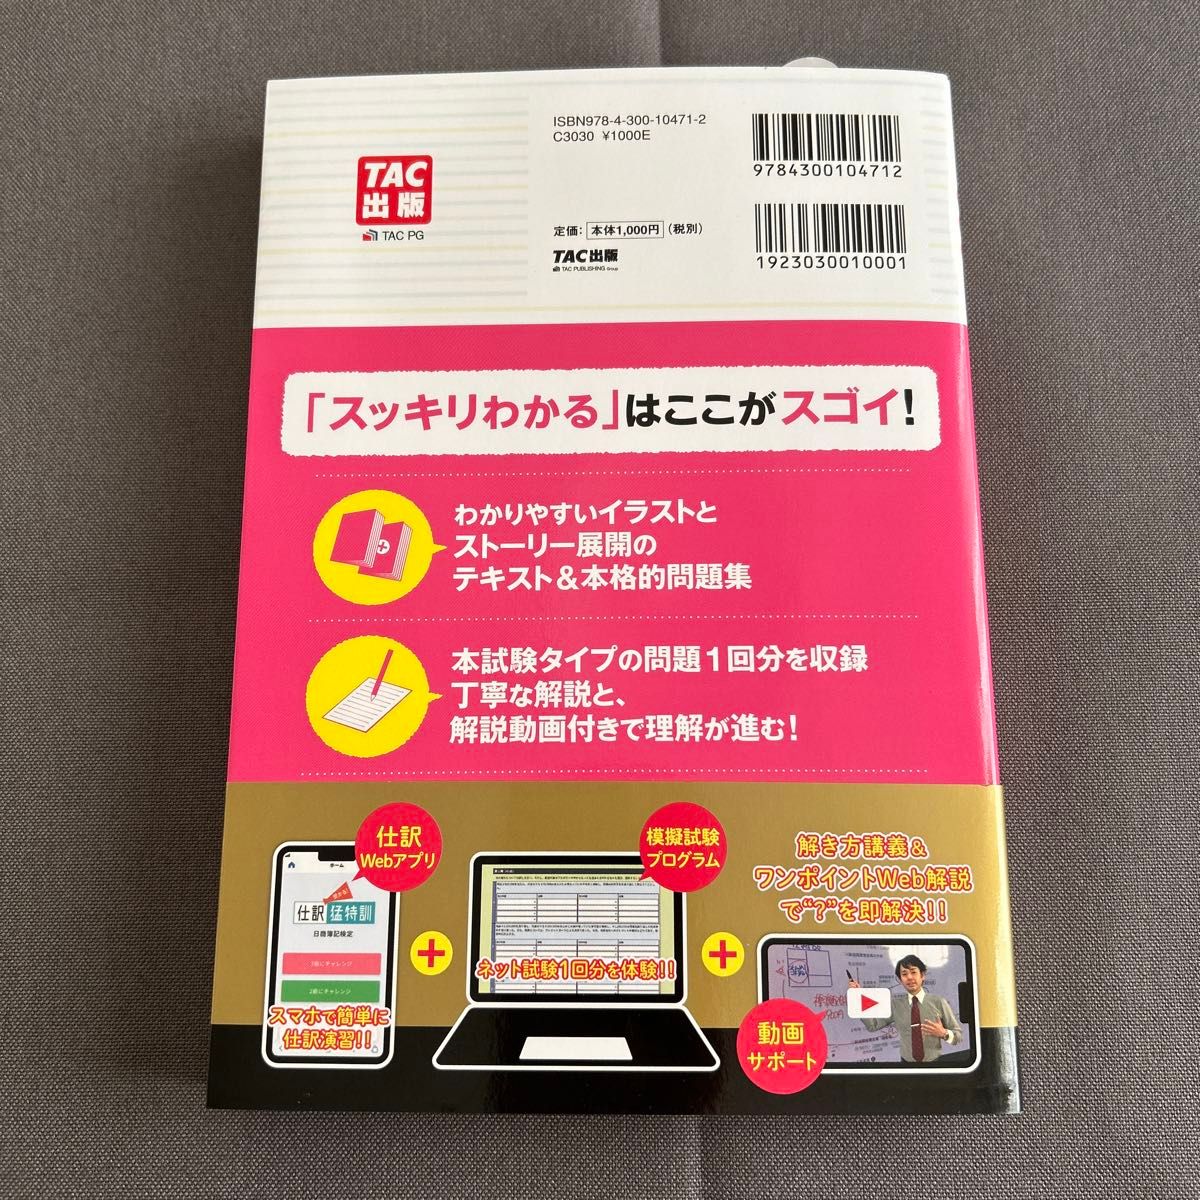 美品 スッキリわかる 日商簿記3級 第14版 TAC出版 商業簿記 スッキリわかるシリーズ